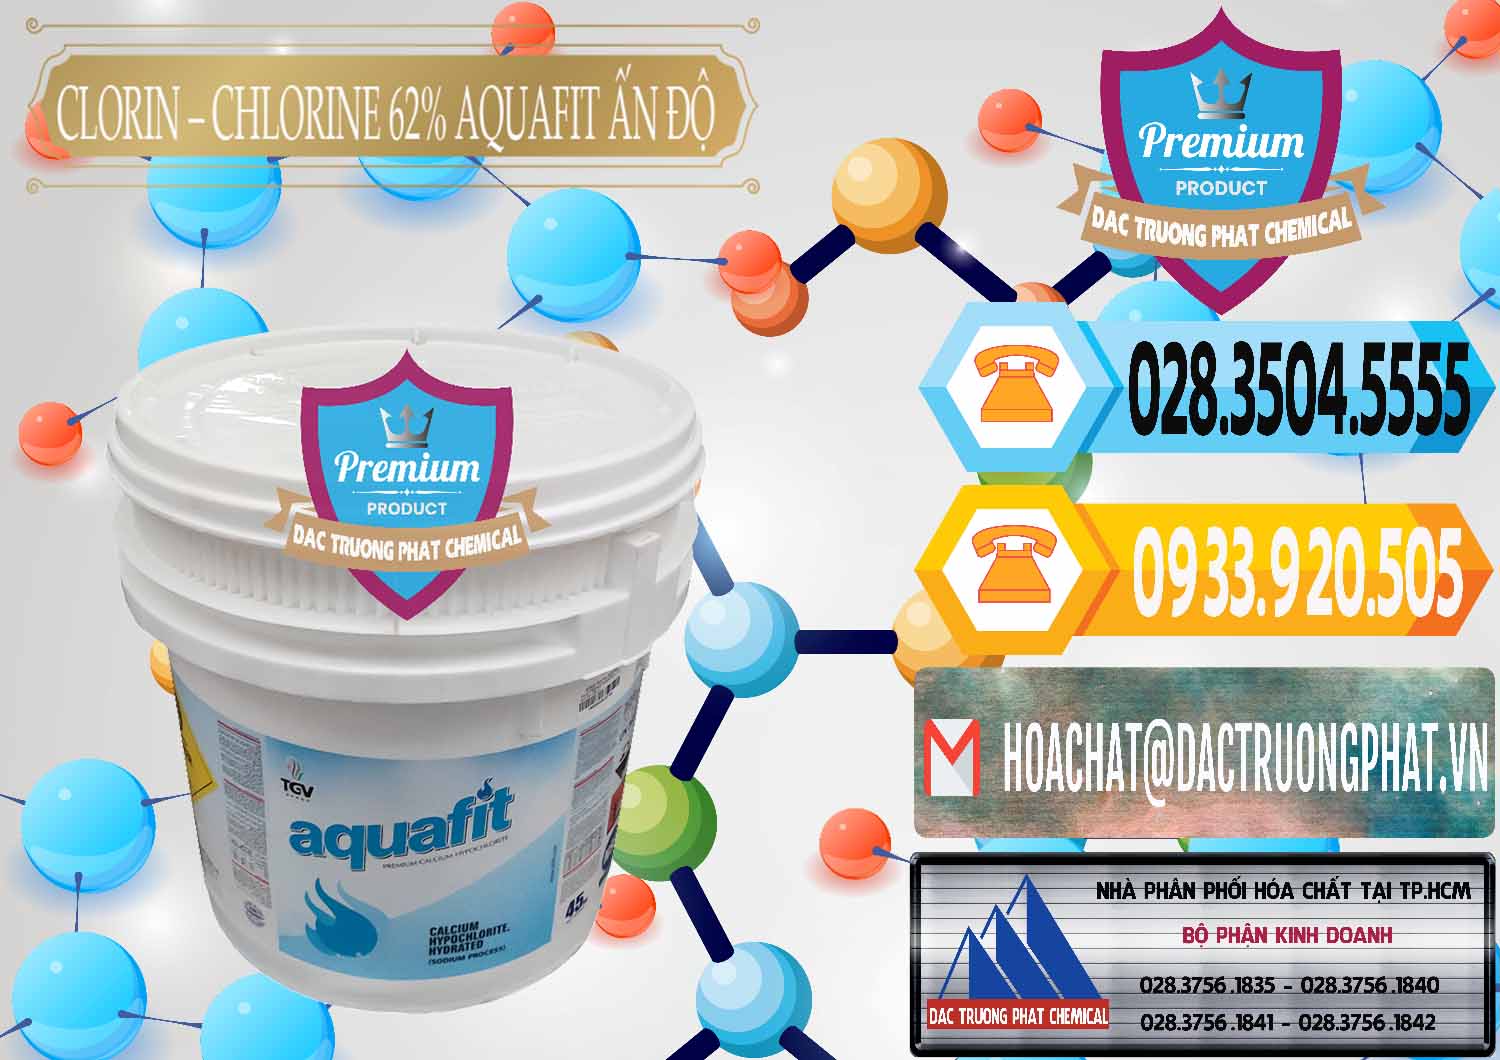 Nơi chuyên phân phối _ bán Clorin - Chlorine 62% Aquafit Thùng Lùn Ấn Độ India - 0057 - Nhà phân phối _ cung cấp hóa chất tại TP.HCM - hoachattayrua.net